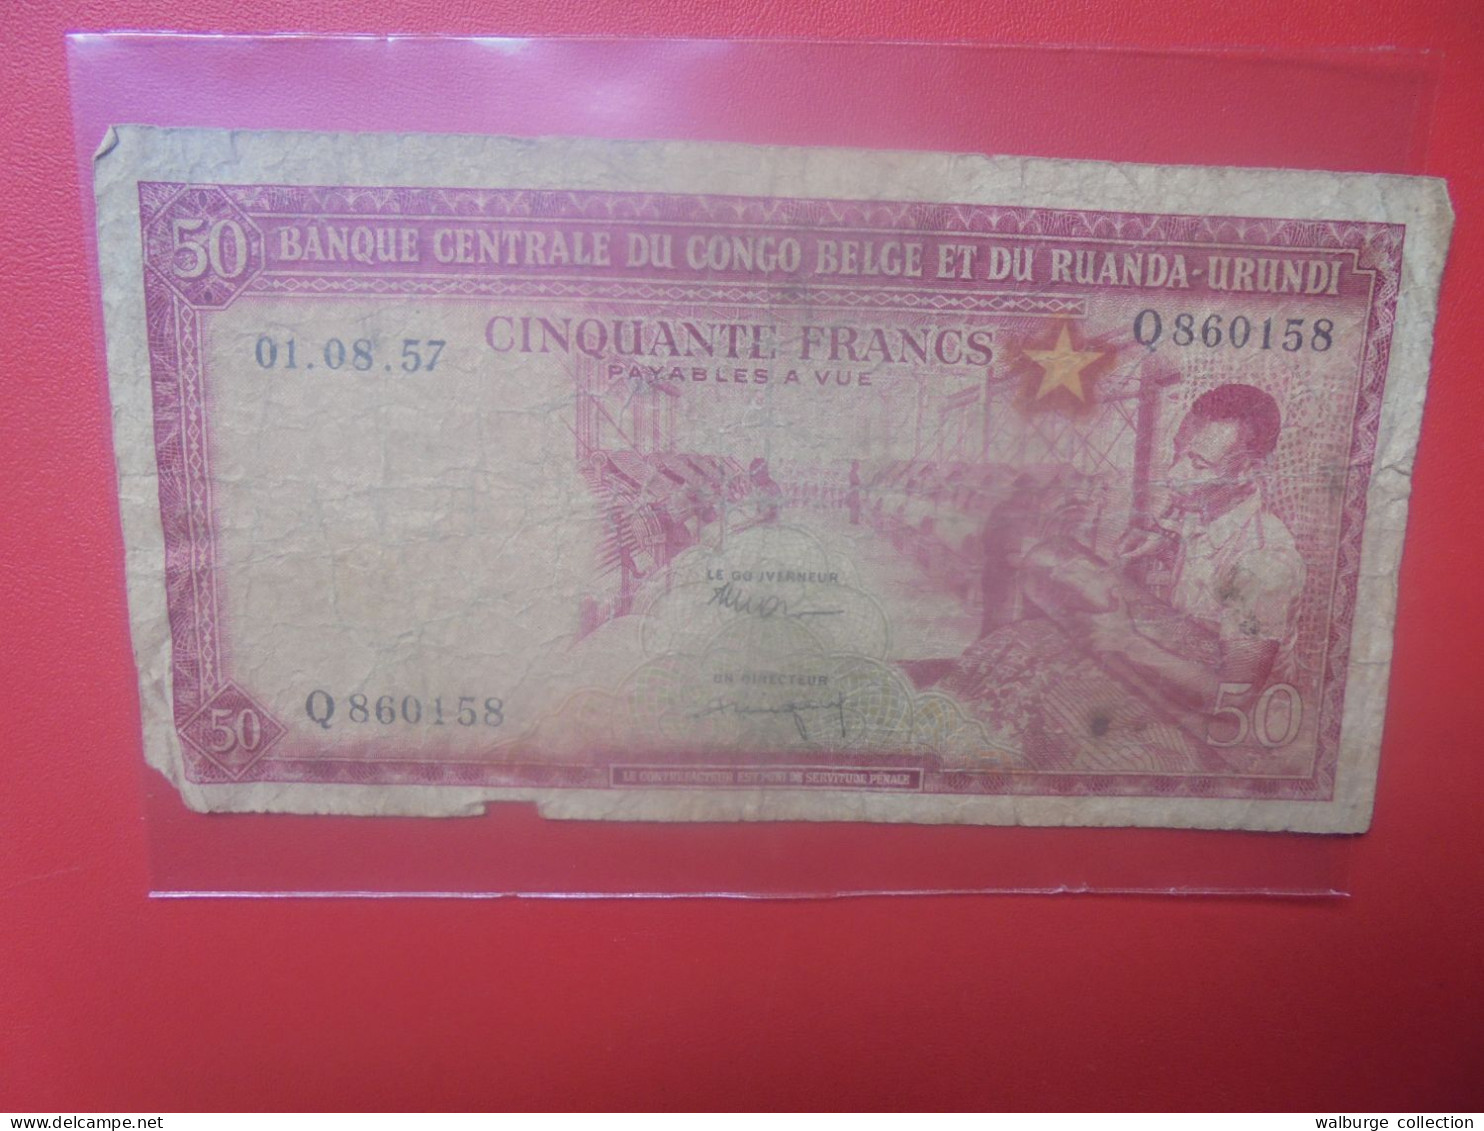 CONGO BELGE 50 FRANCS 1-8-57 Circuler (B.33) - Belgian Congo Bank